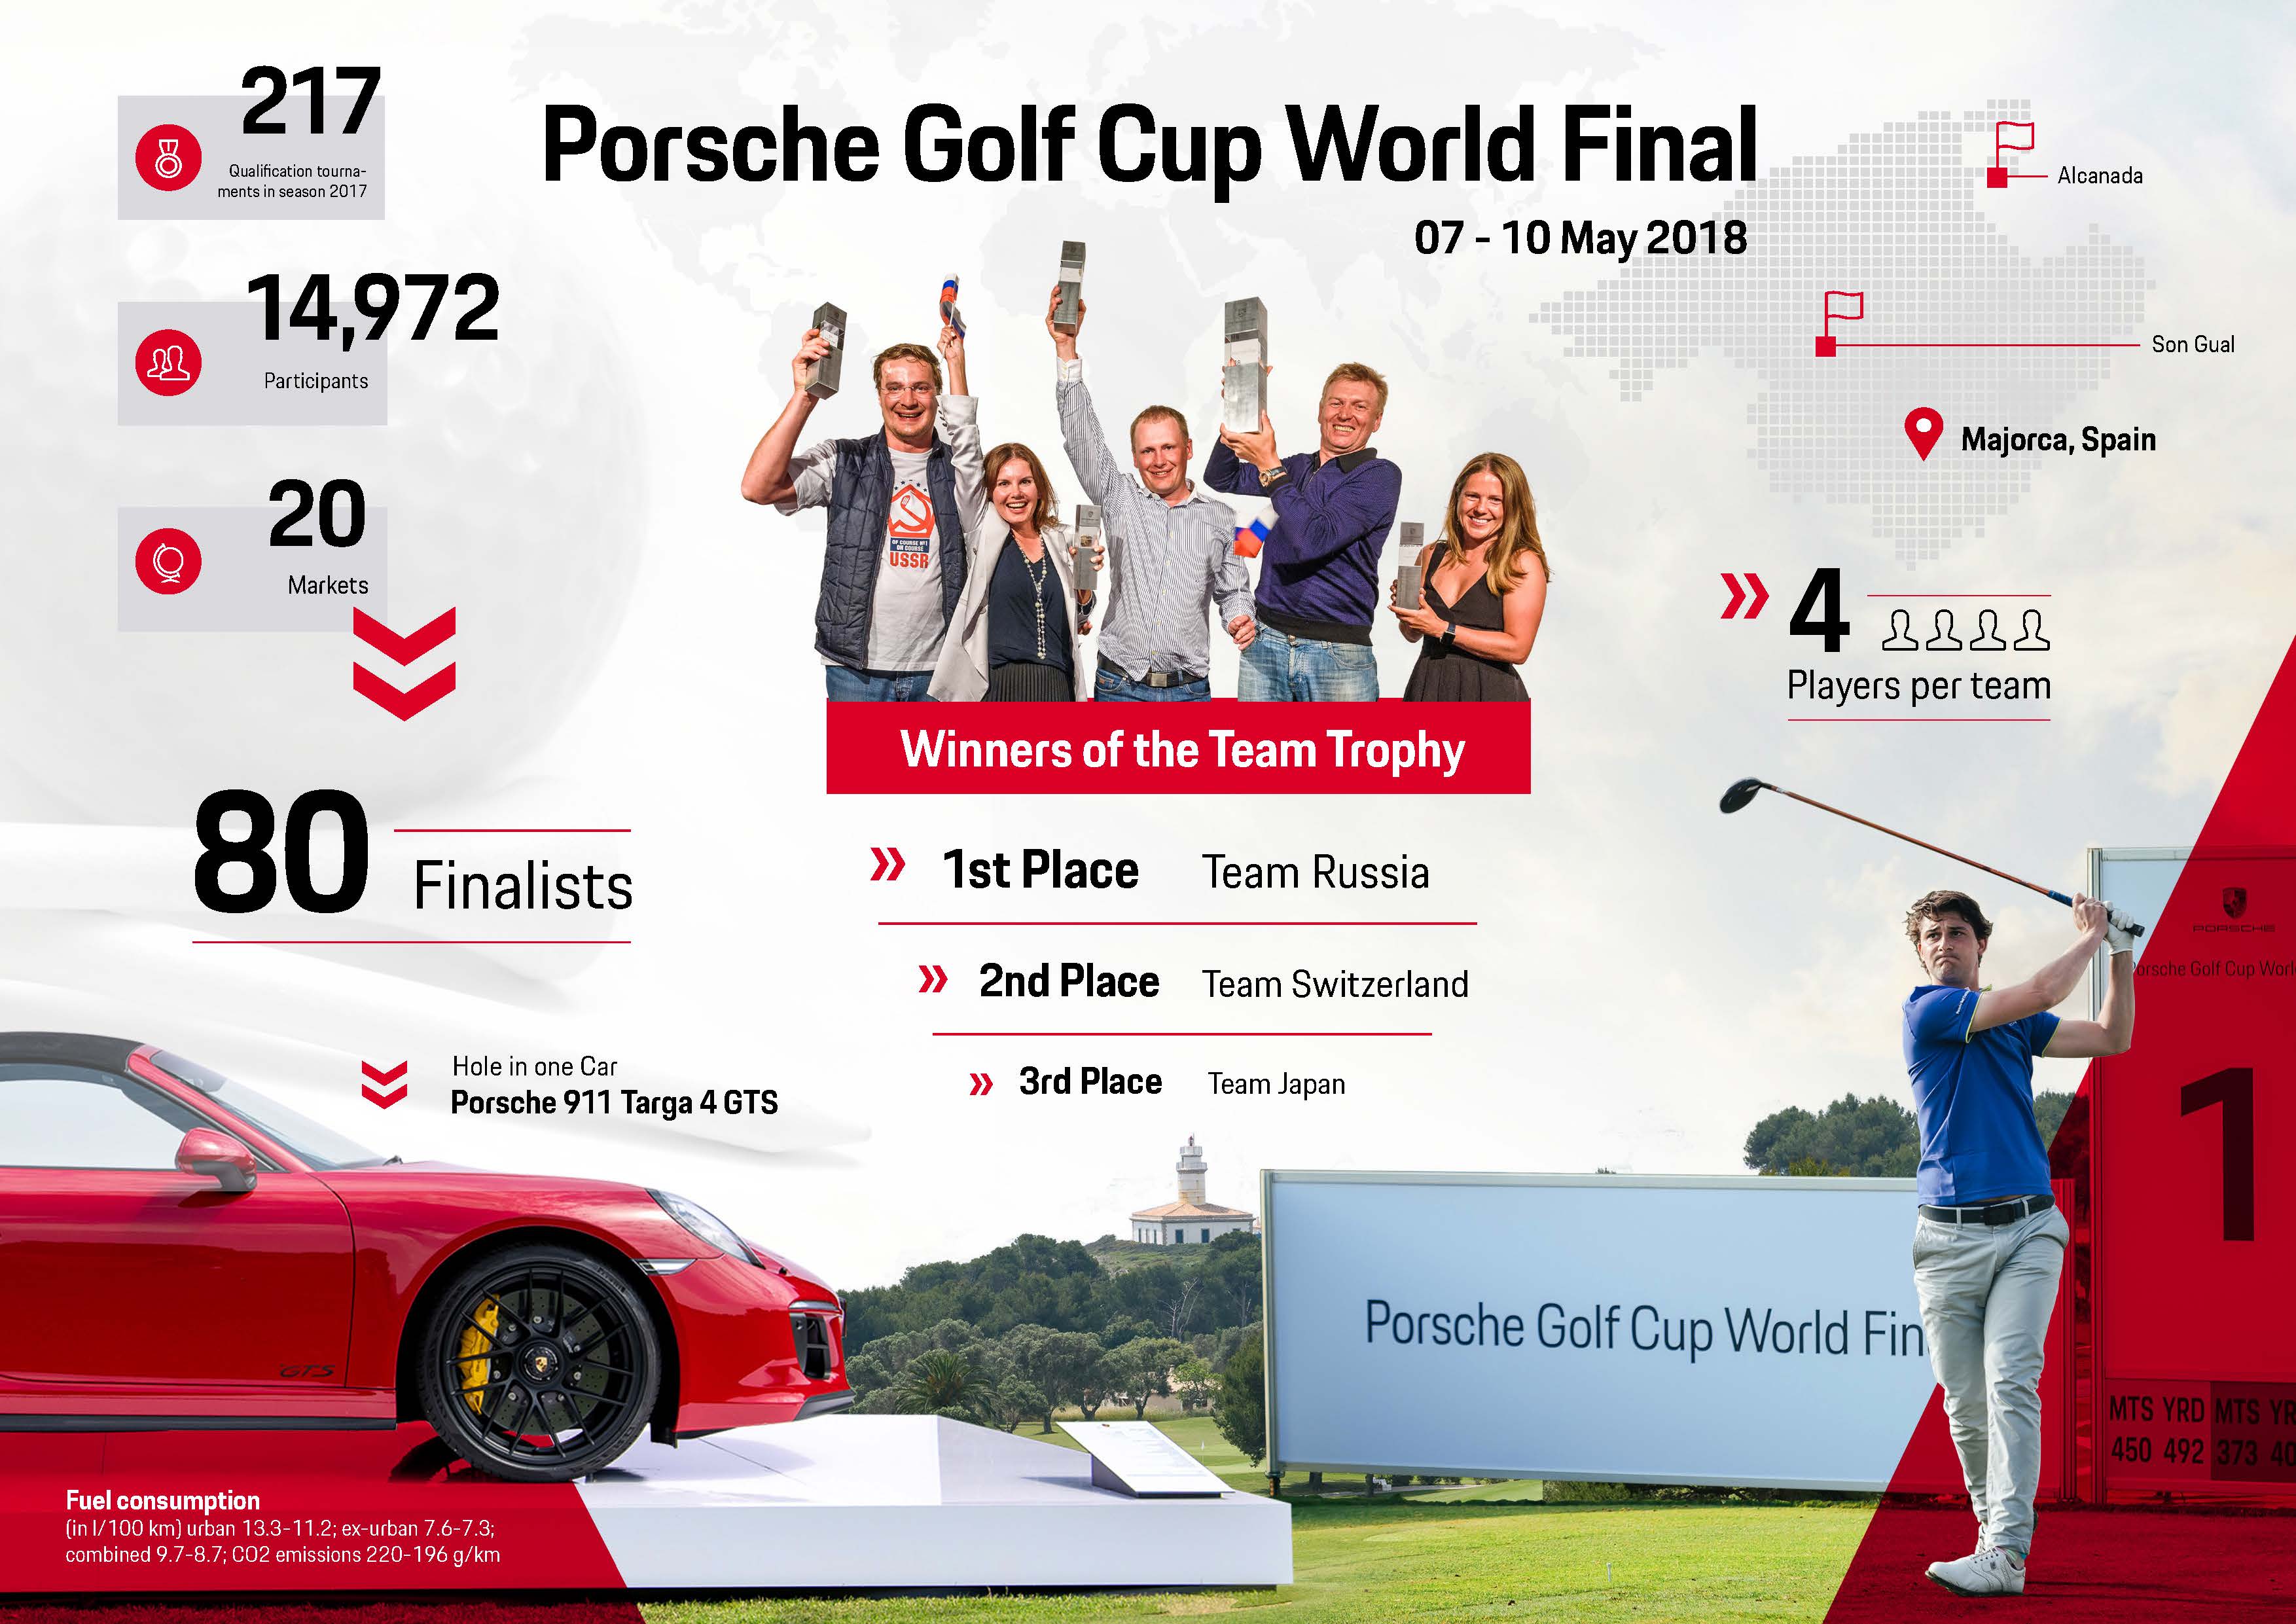 Porsche Golf Cup World Final, 2018, Porsche AG